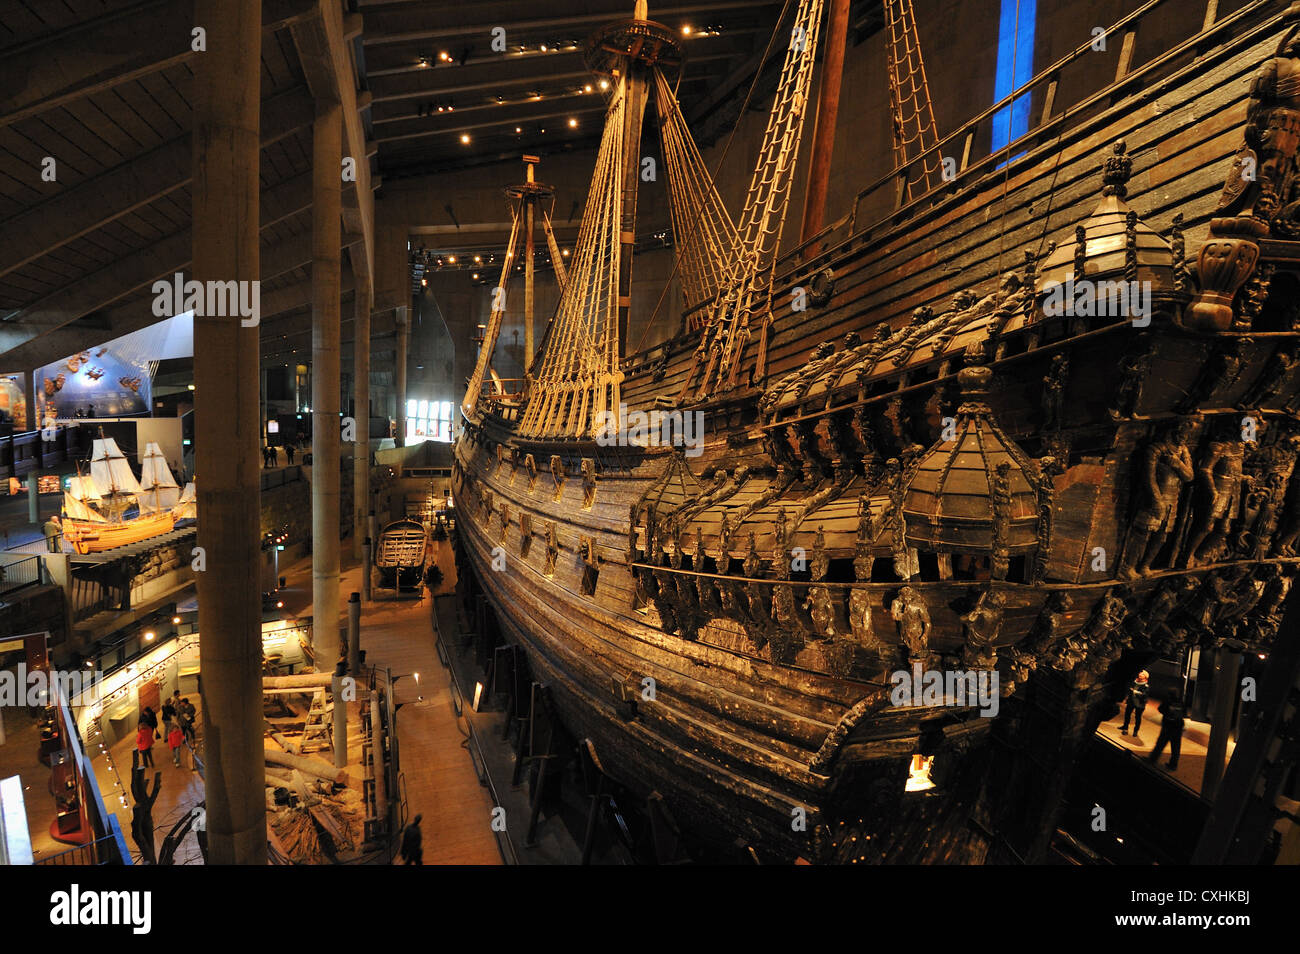 Voir le modèle et l'original conservé au musée Vasa Vasa navire à Djurgarden Stockholm, Stockholms Lan, Suède Banque D'Images